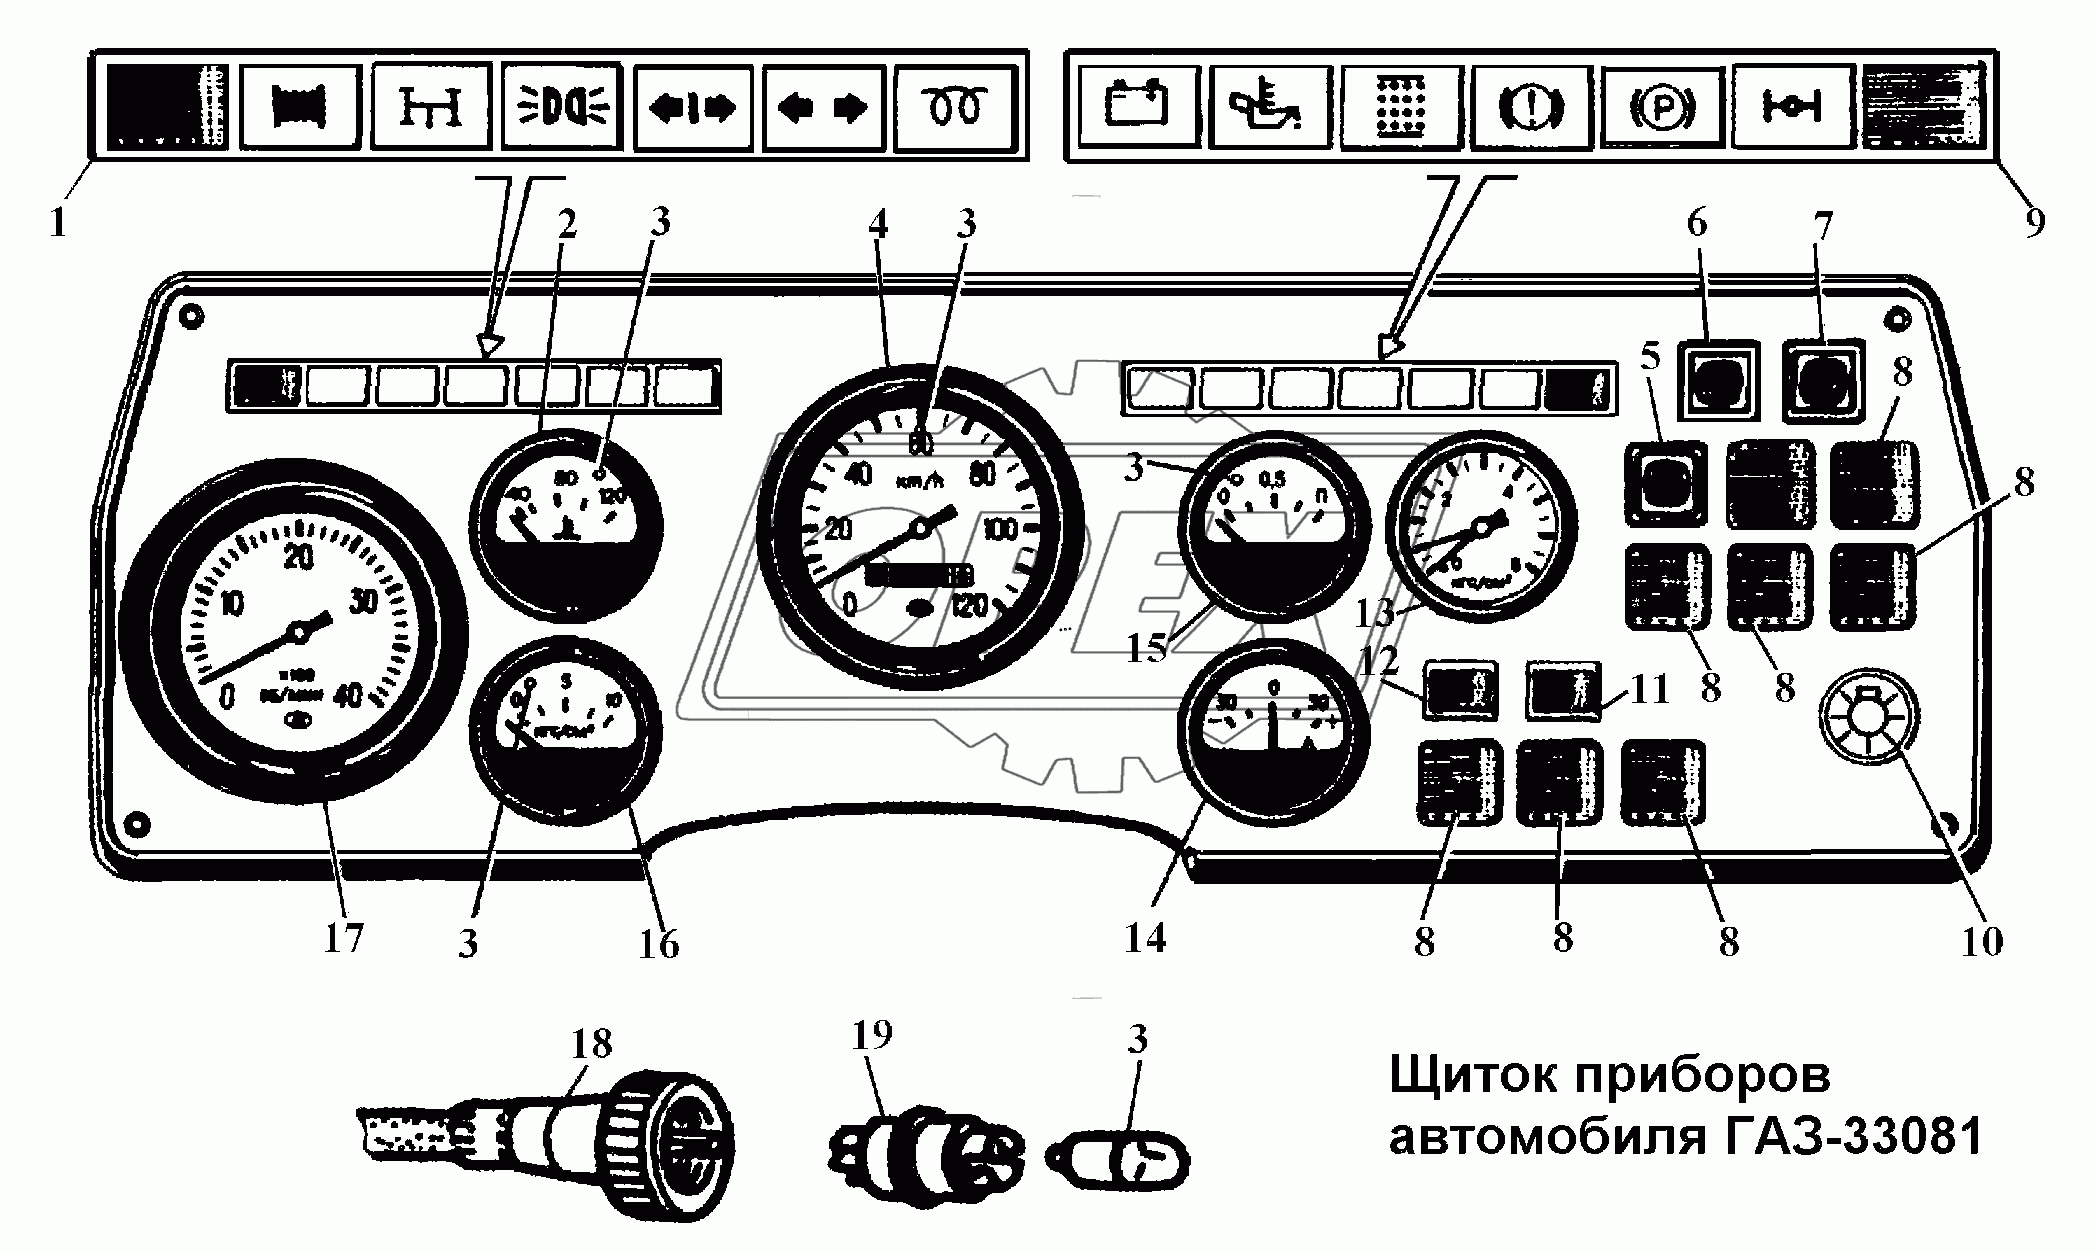 Щиток приборов автомобиля ГАЗ-33081